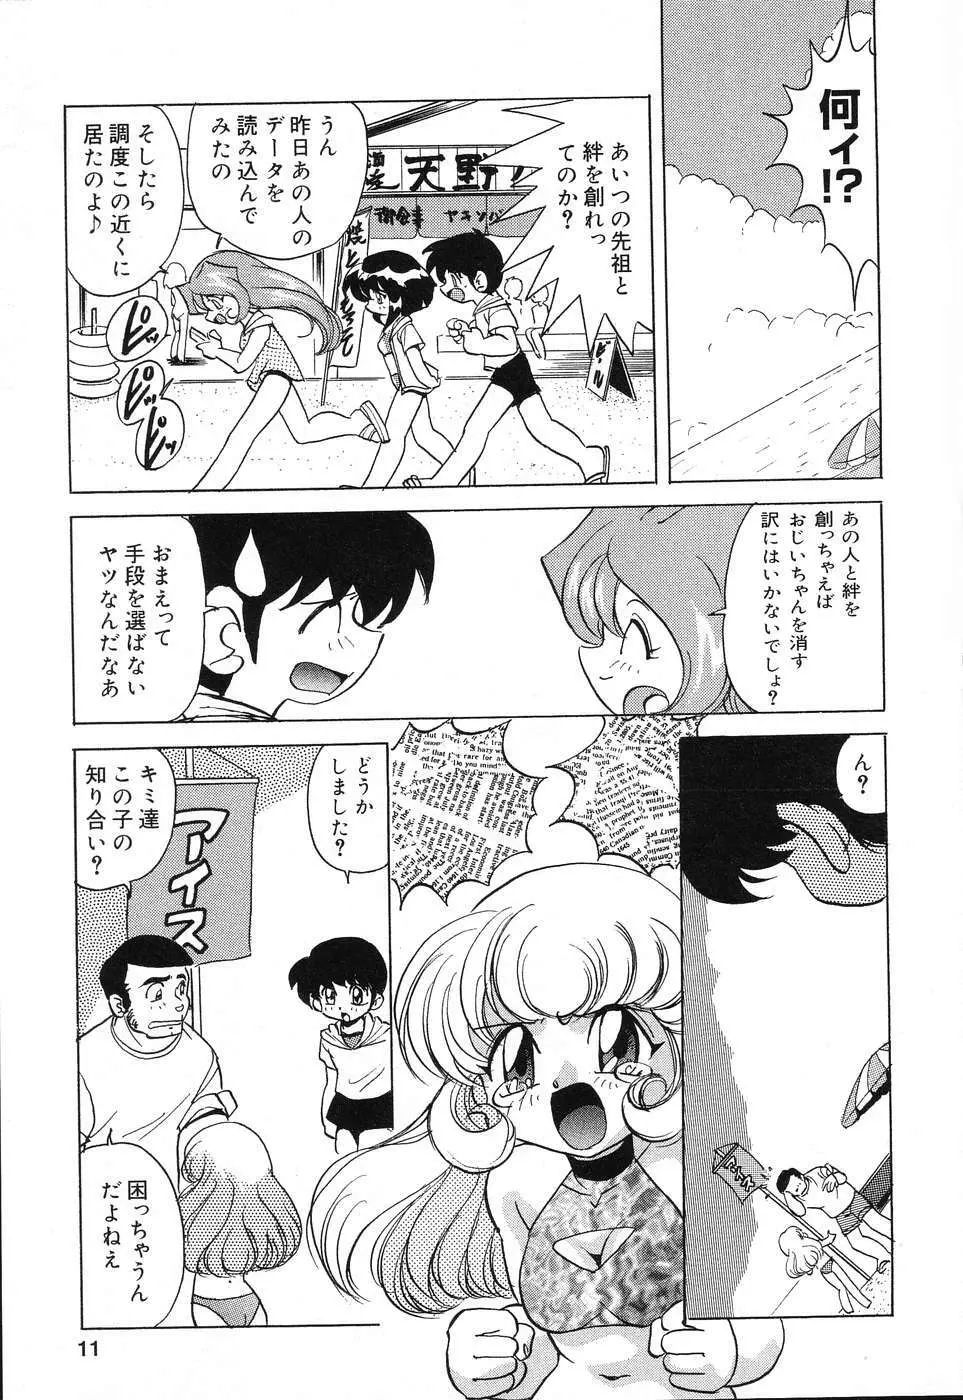 ぴゅあぷちっと Vol.15 12ページ